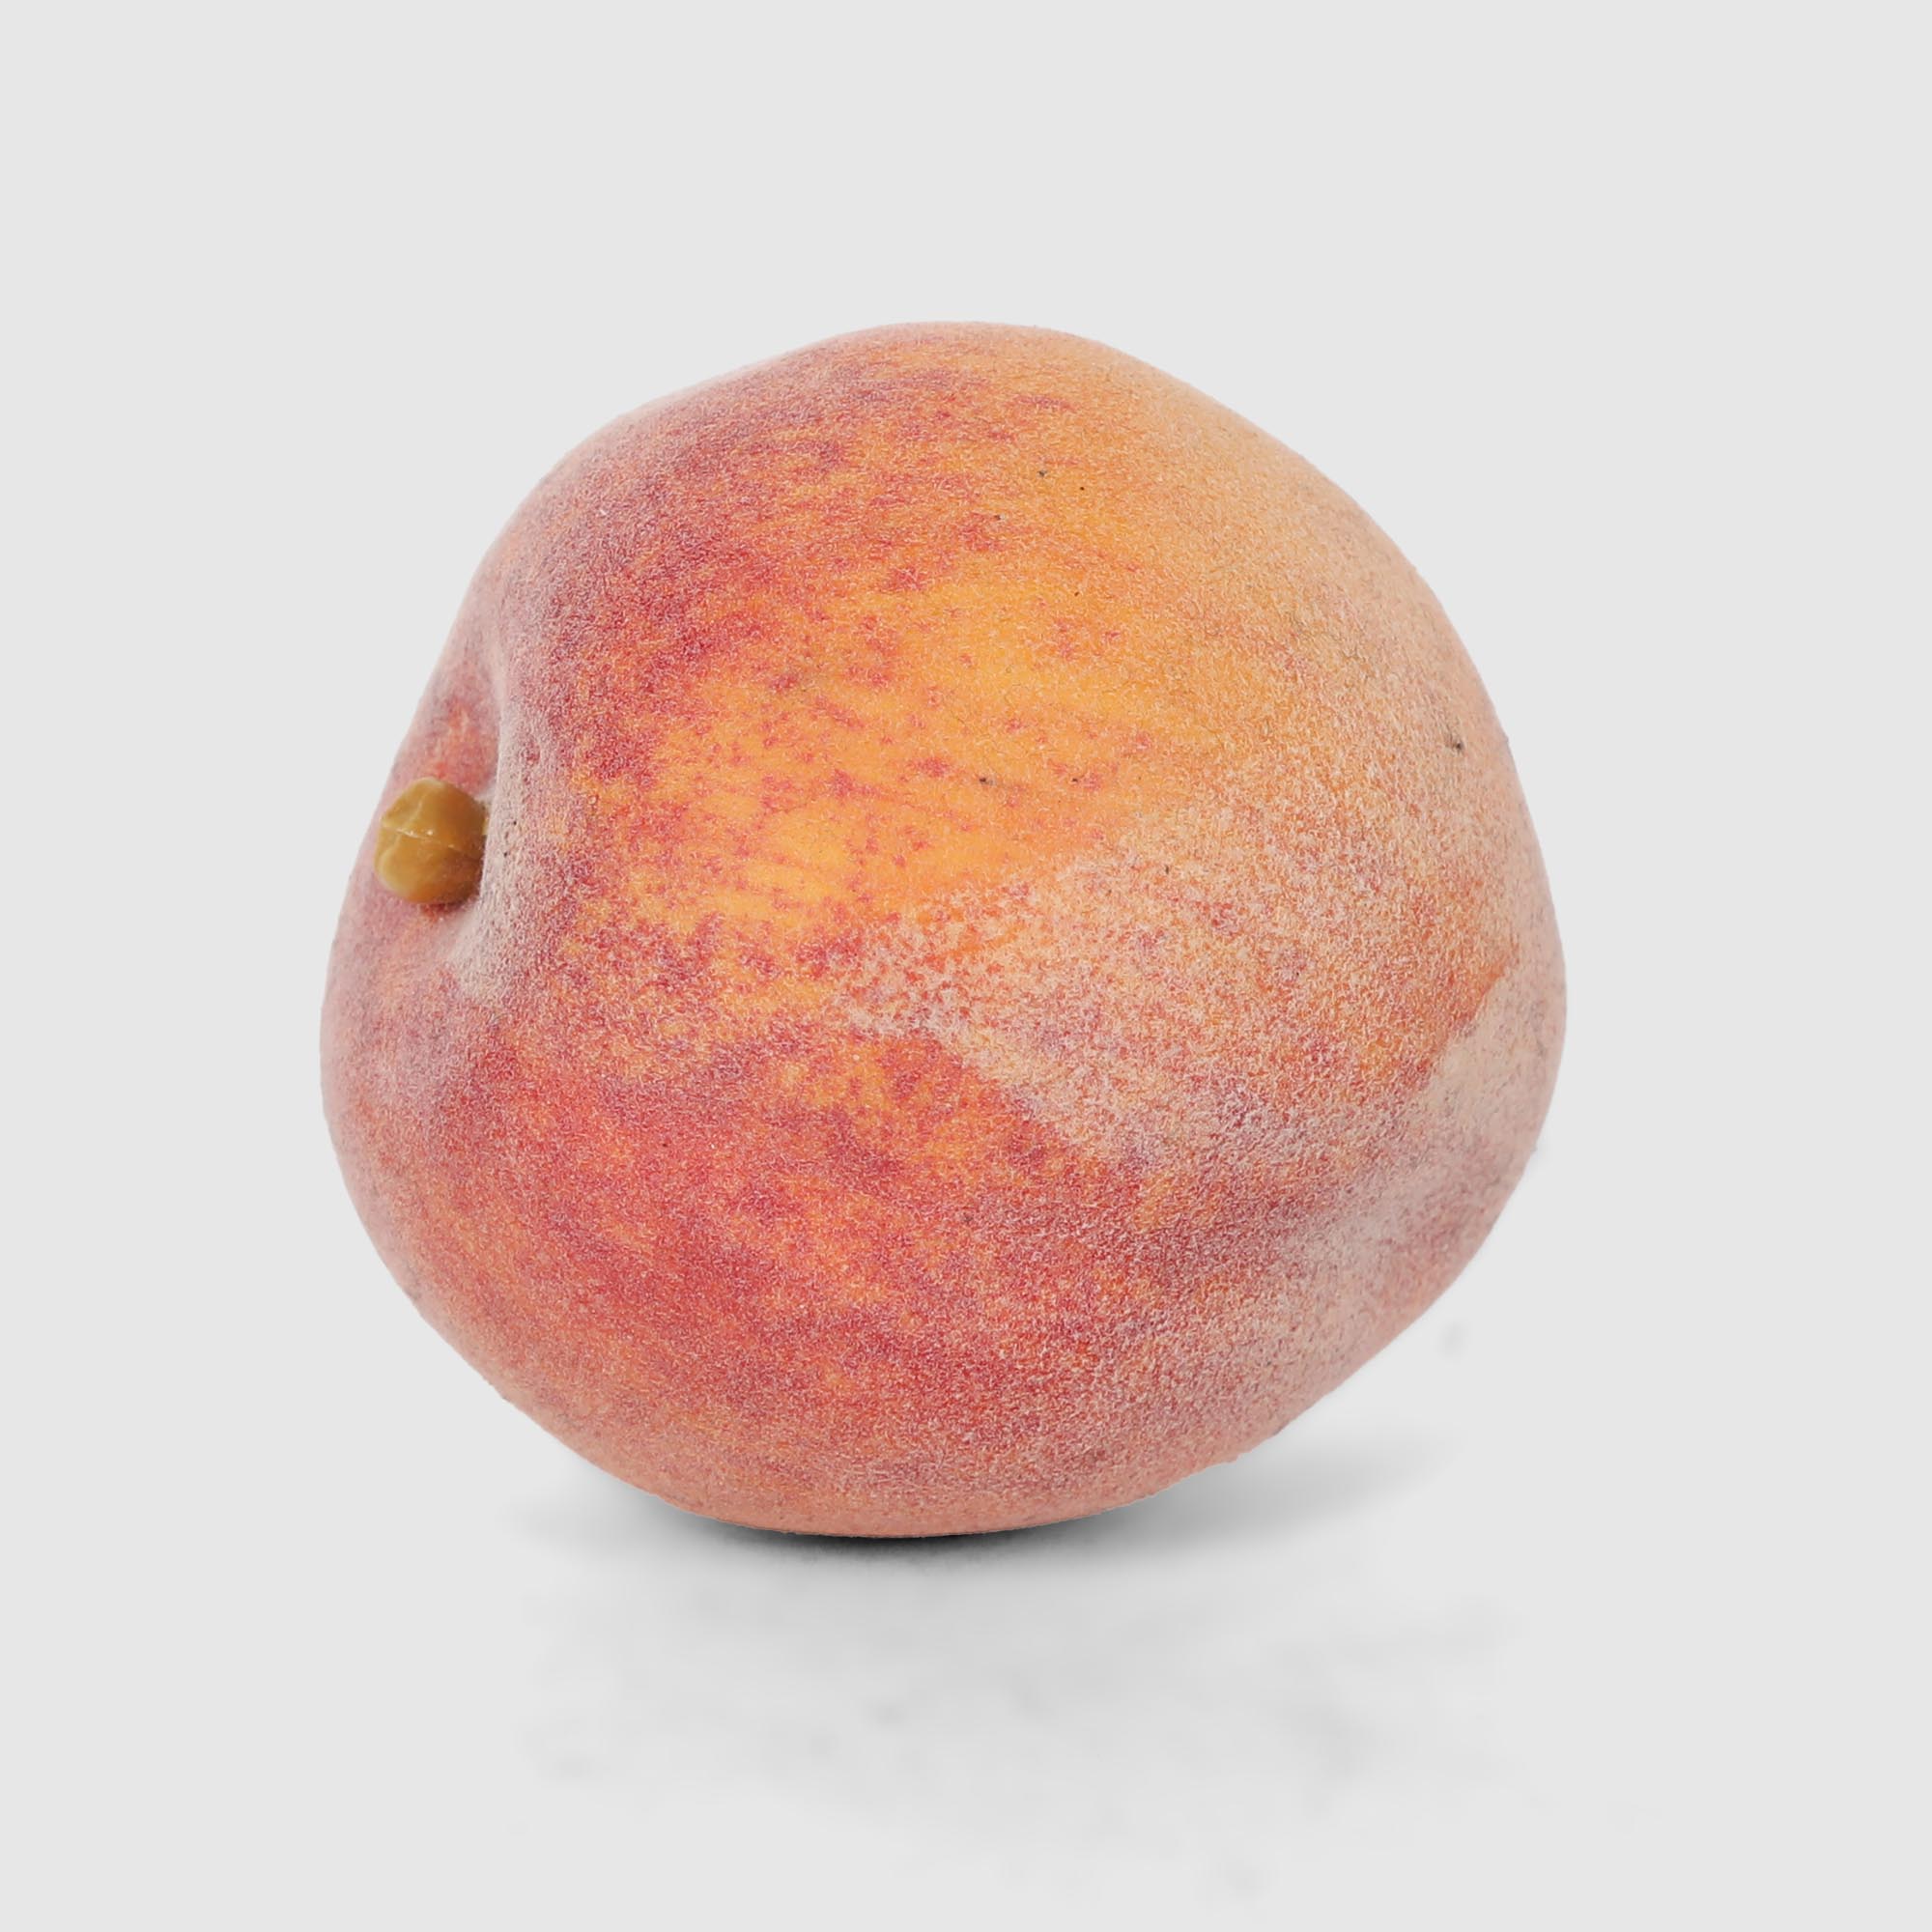 Персик Конэко-О 93813 7,5х7,4 см персик колоновидный инжирный